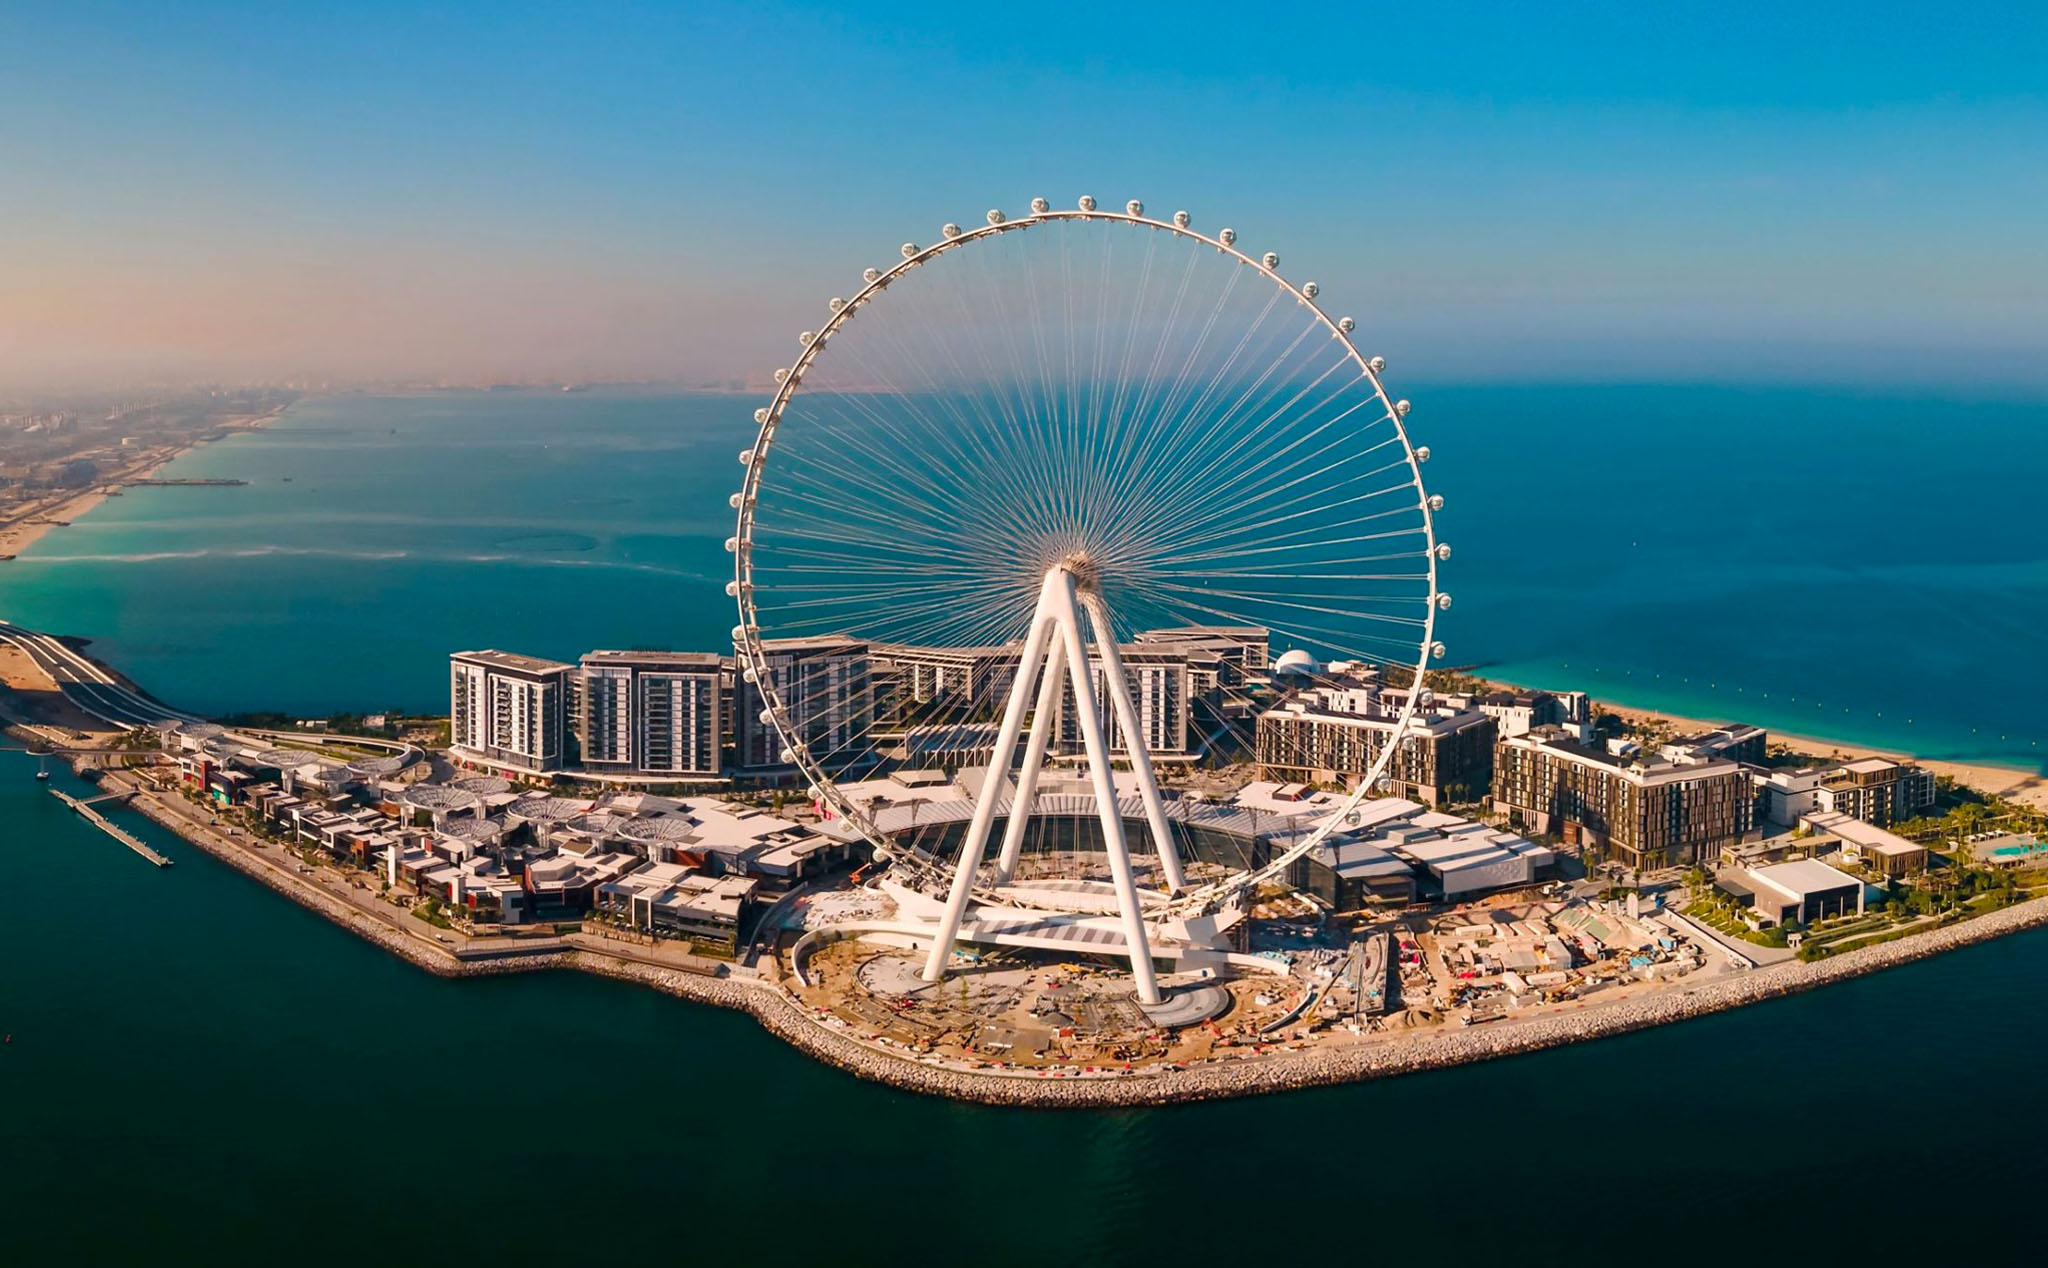 "Vòng đu quay cao nhất thế giới" - Ain Dubai, có dịch vụ cabin riêng có thể tổ chức tiệc